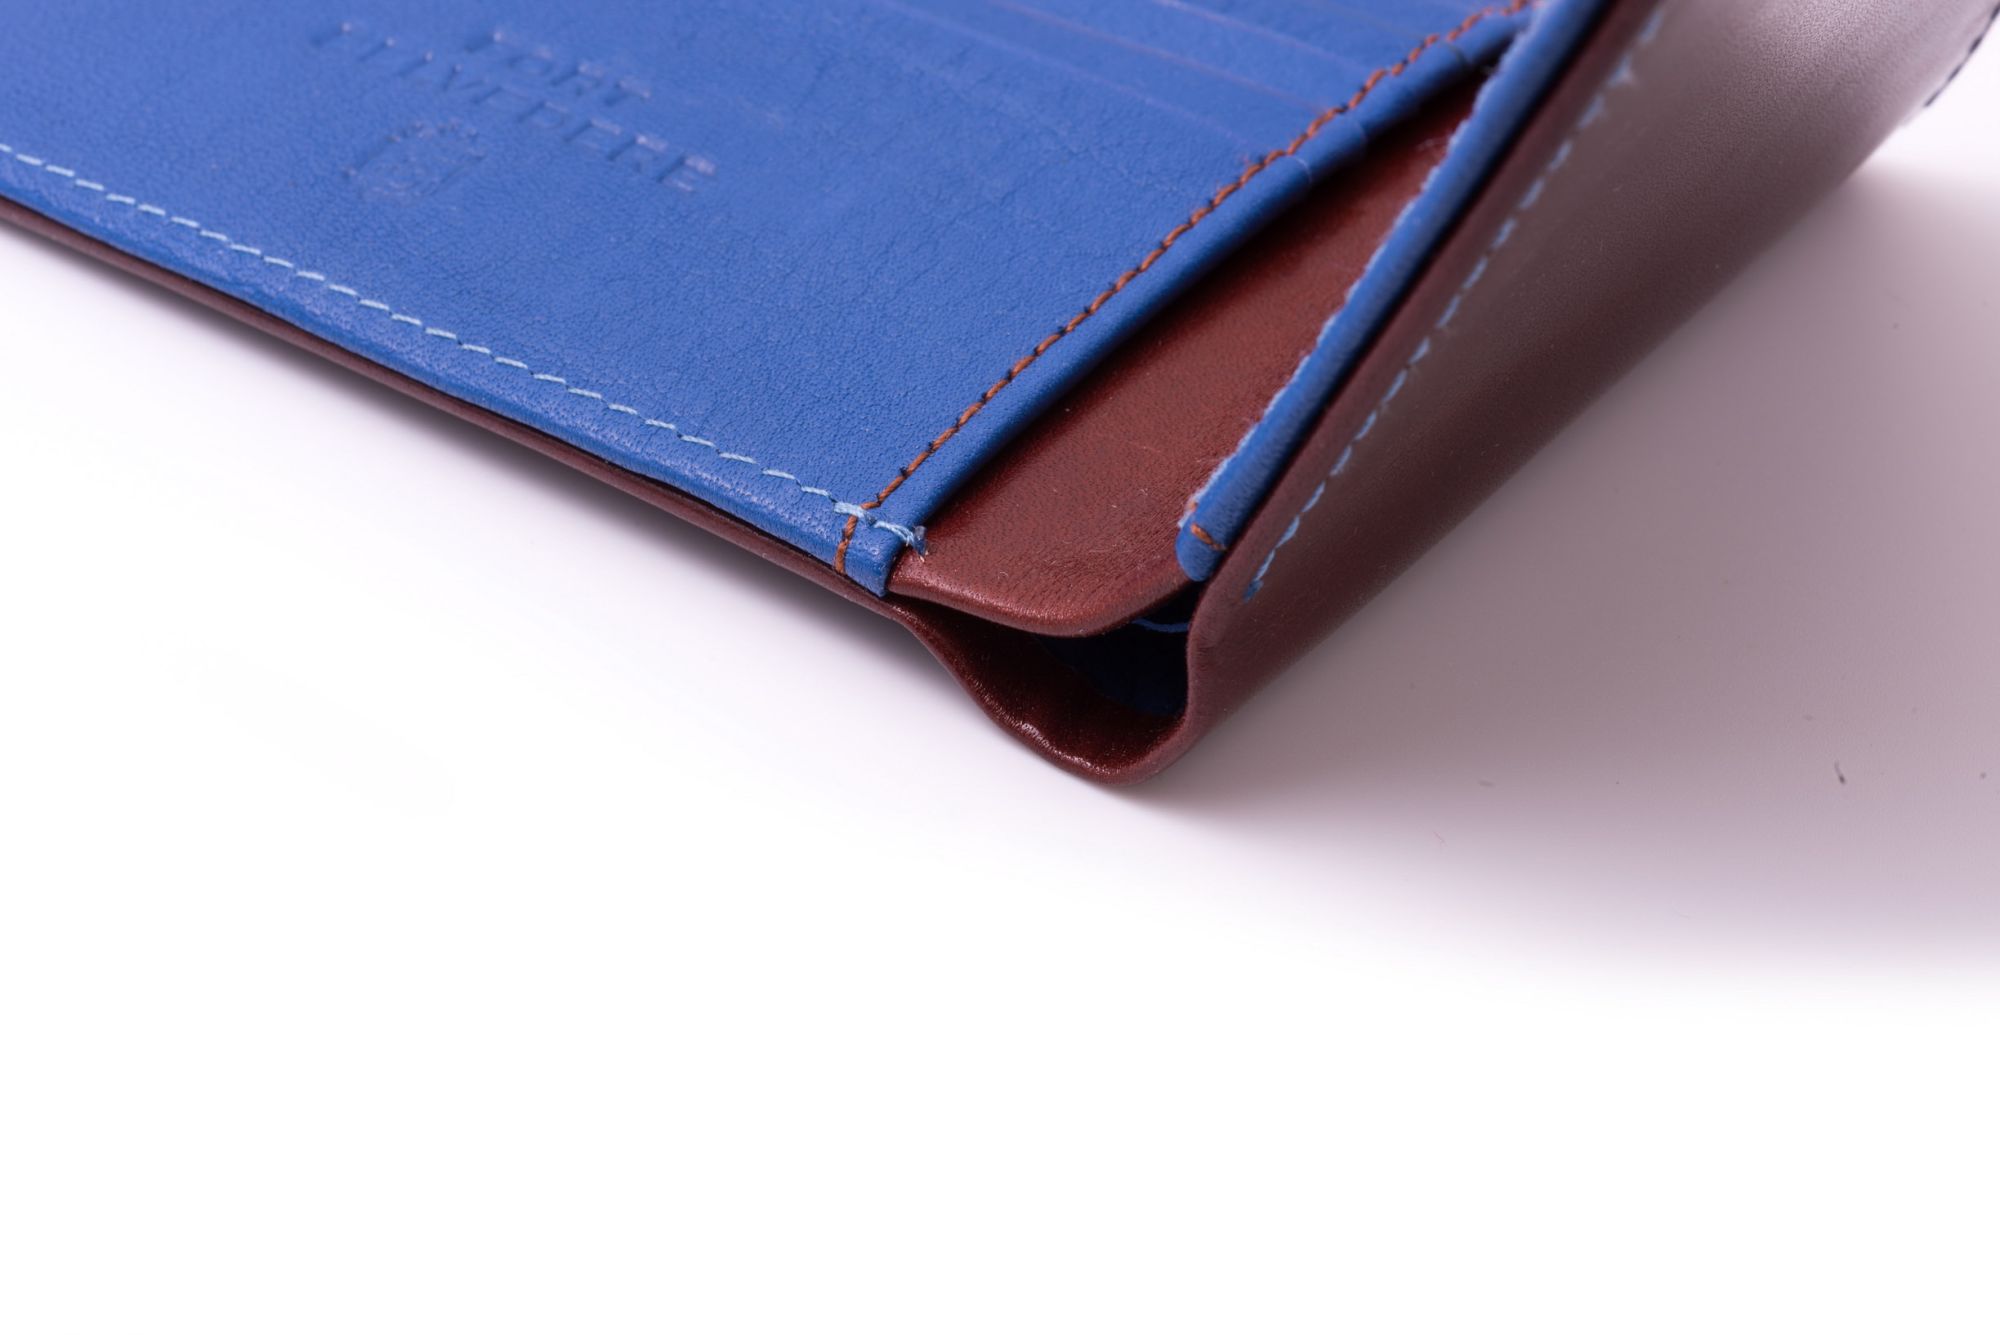 Wallet in Blue Calfskin